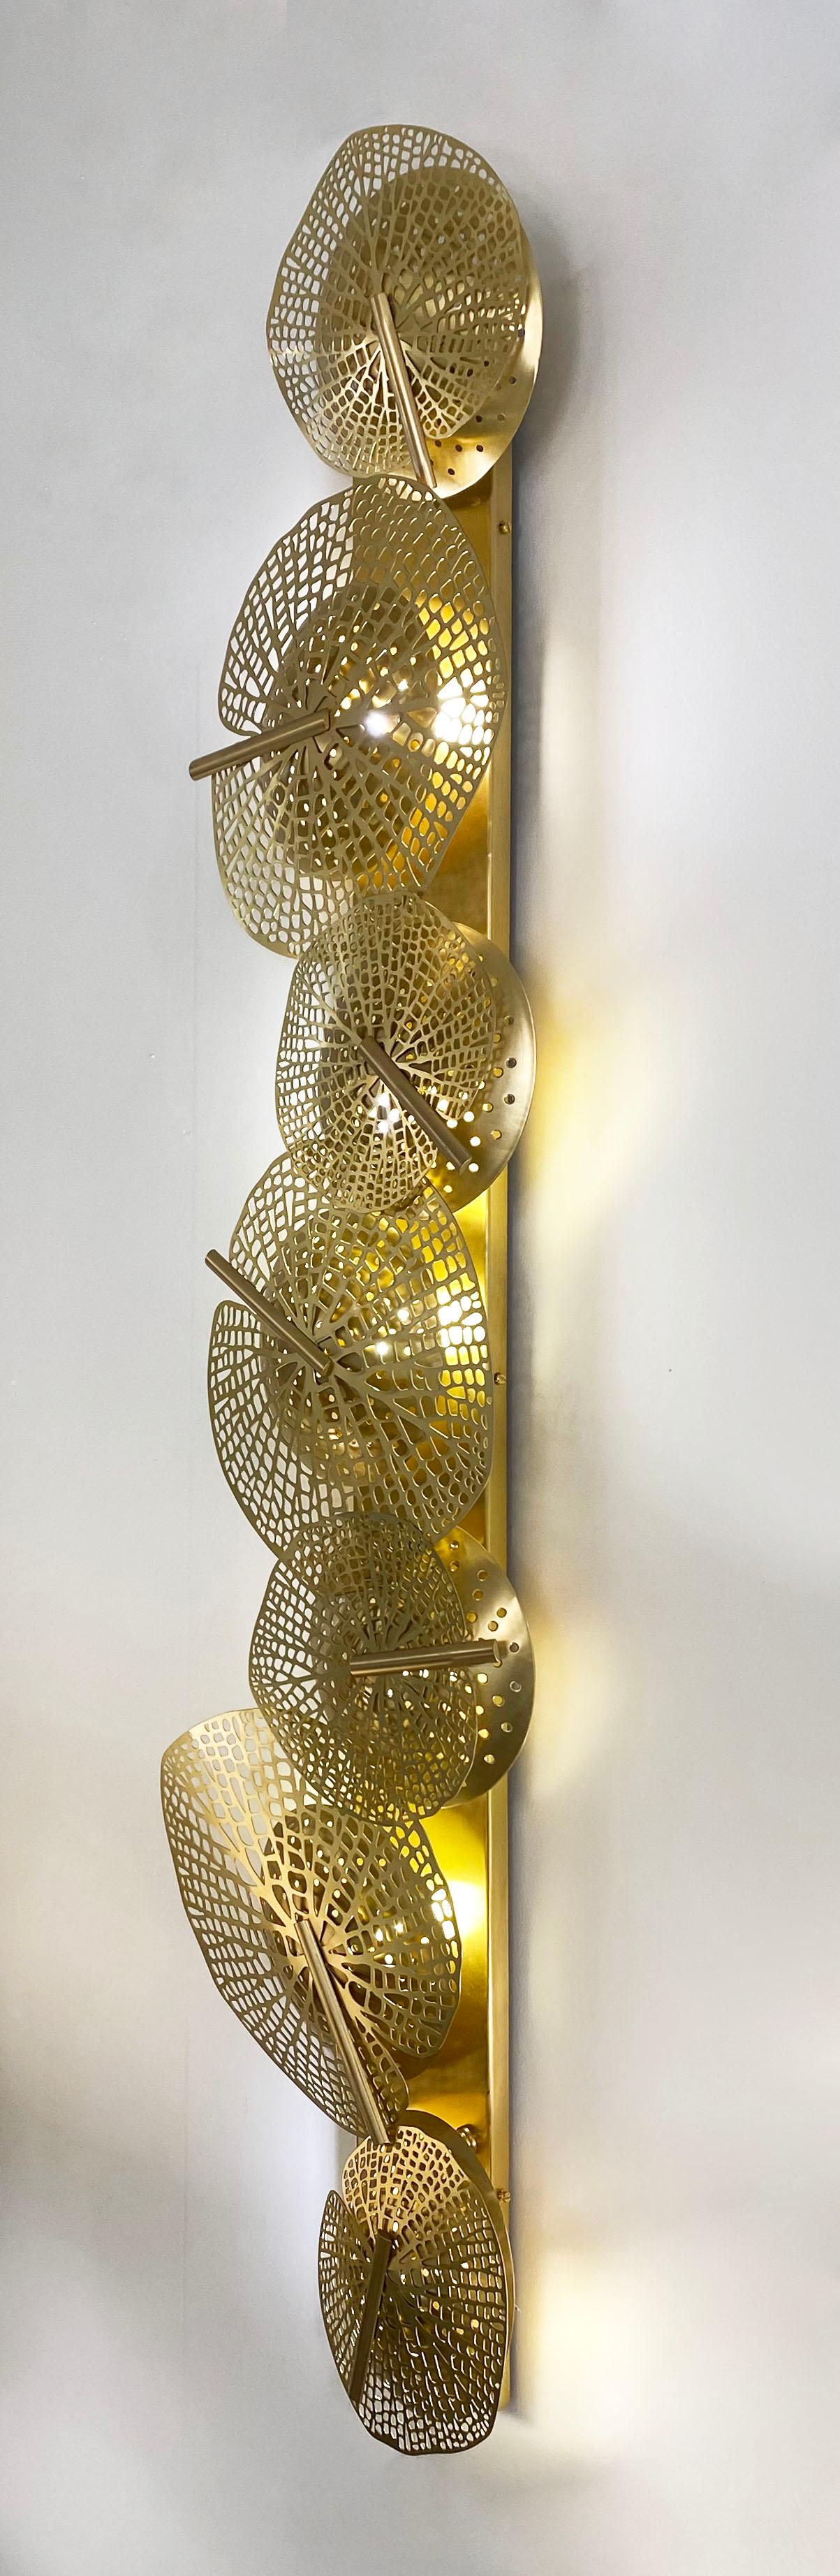 Organique Monumental Italian Organic Art Design Modernity Perforated Brass Leaf Sconce (applique à feuilles en laiton perforé) en vente